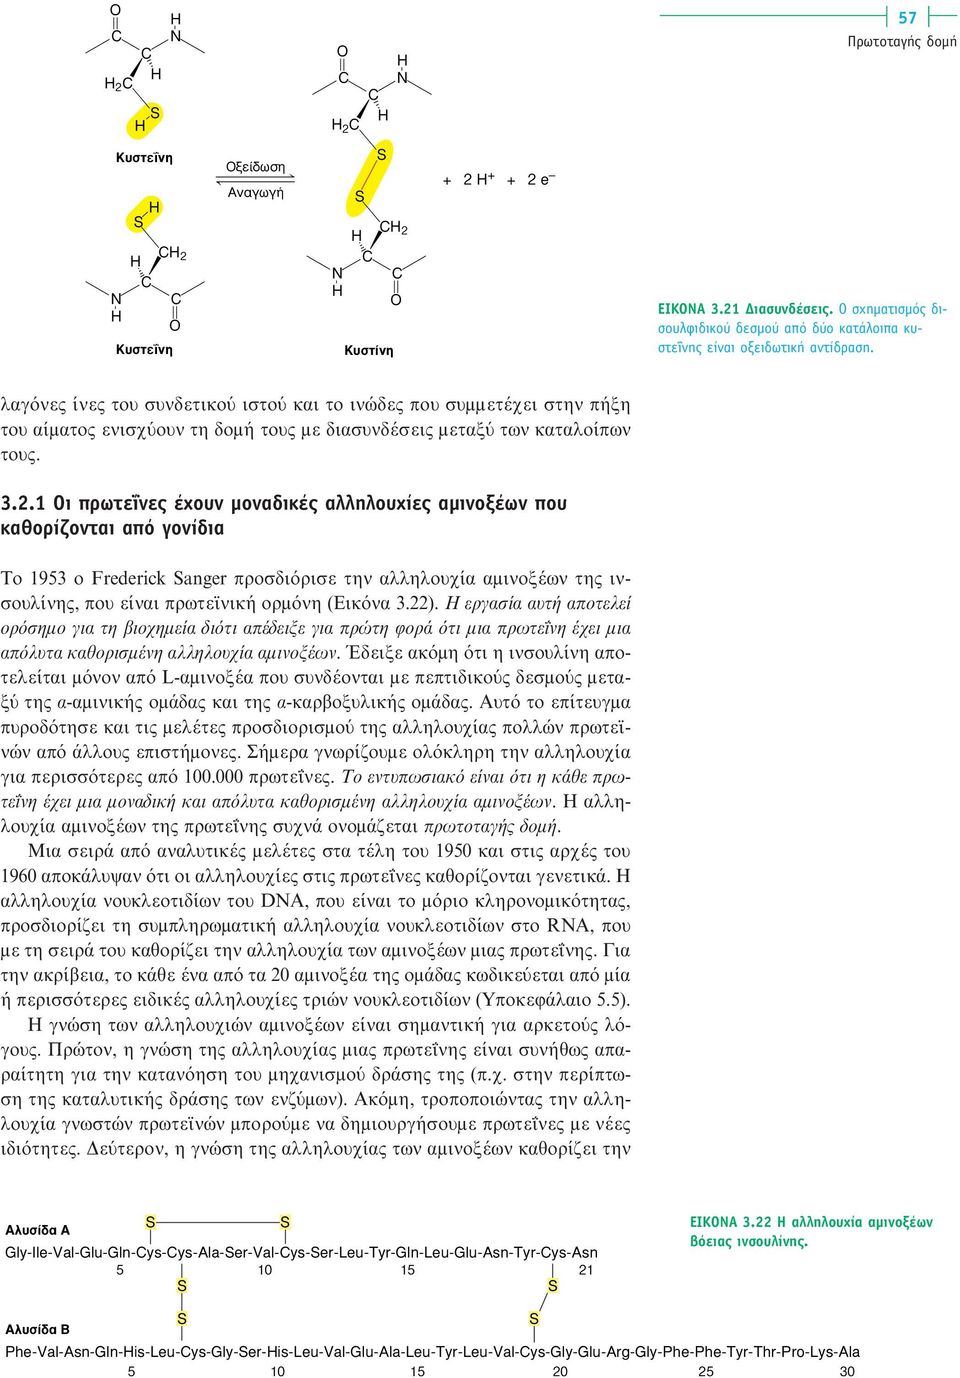 1 Οι πρωτεΐνες έχουν µοναδικές αλληλουχίες αµινοξέων που καθορίζονται από γονίδια Το 1953 ο Frederick anger προσδιόρισε την αλληλουχία αµινοξέων της ινσουλίνης, που είναι πρωτεϊνική ορµόνη (Eικόνα 3.